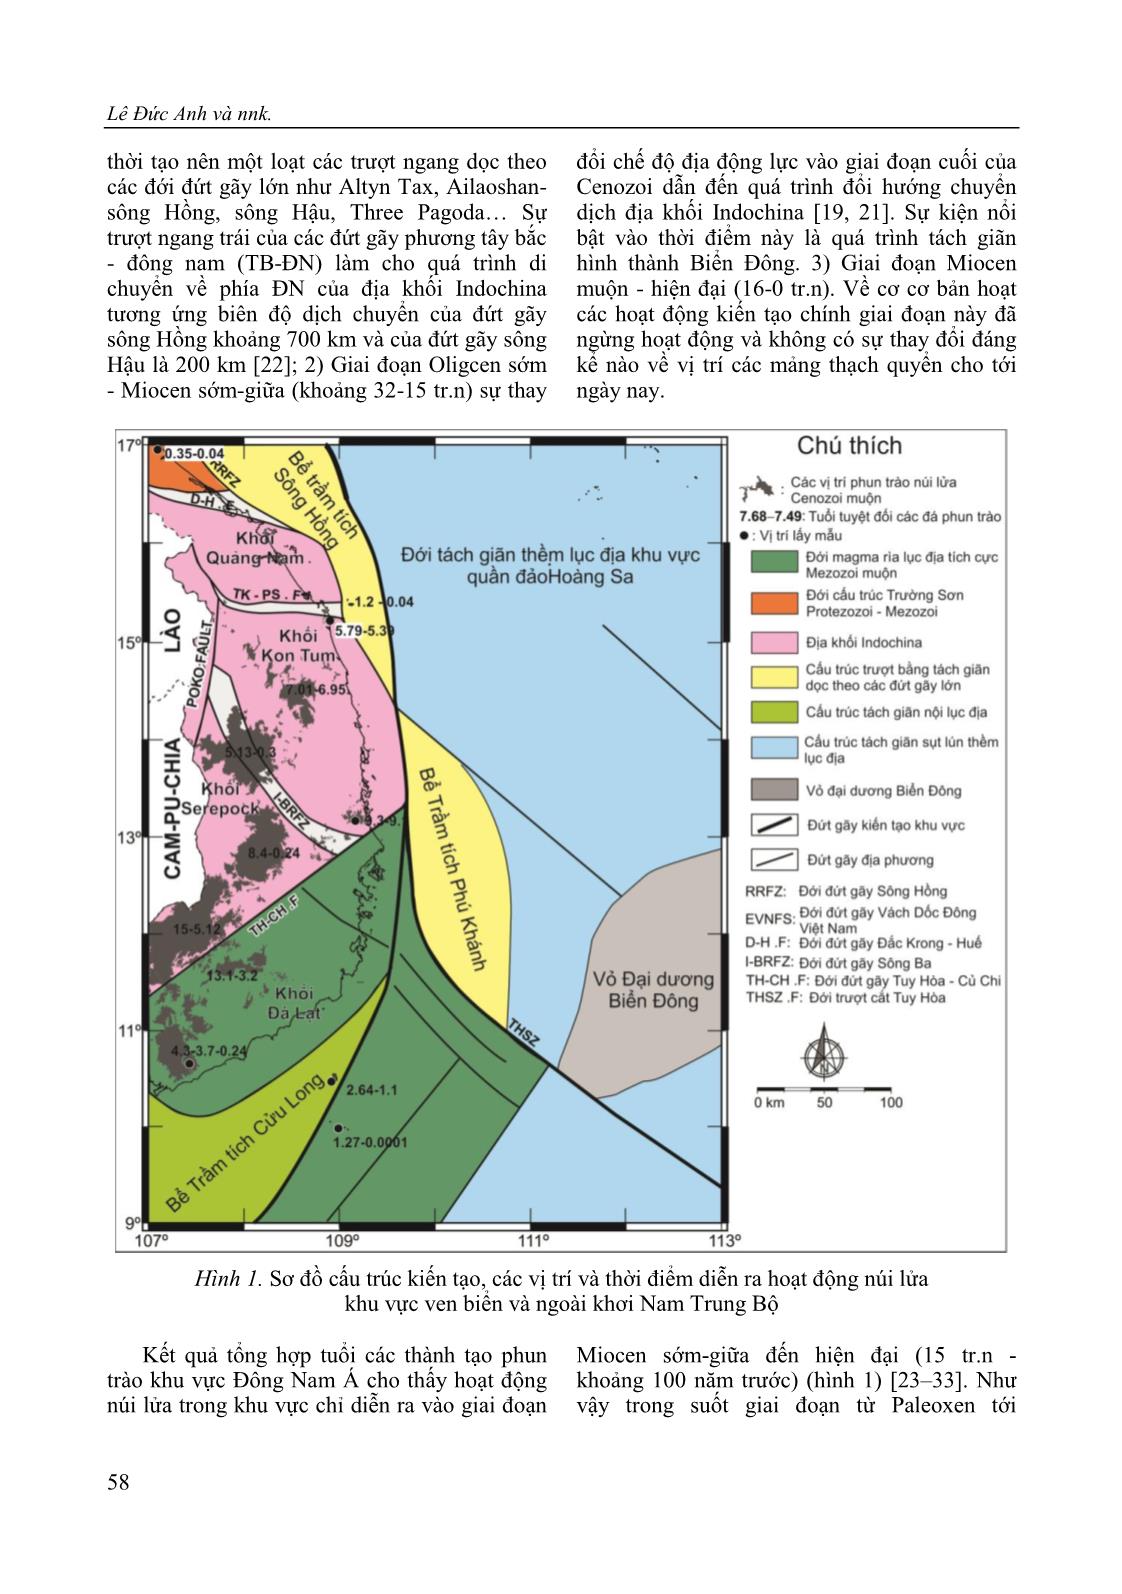 Nghiên cứu phát triển phương pháp tính thành phần hóa học dung thể magma basalt nguyên thủy giai đoạn Cenozoi khu vực ven biển và ngoài khơi Nam Trung Bộ trang 4